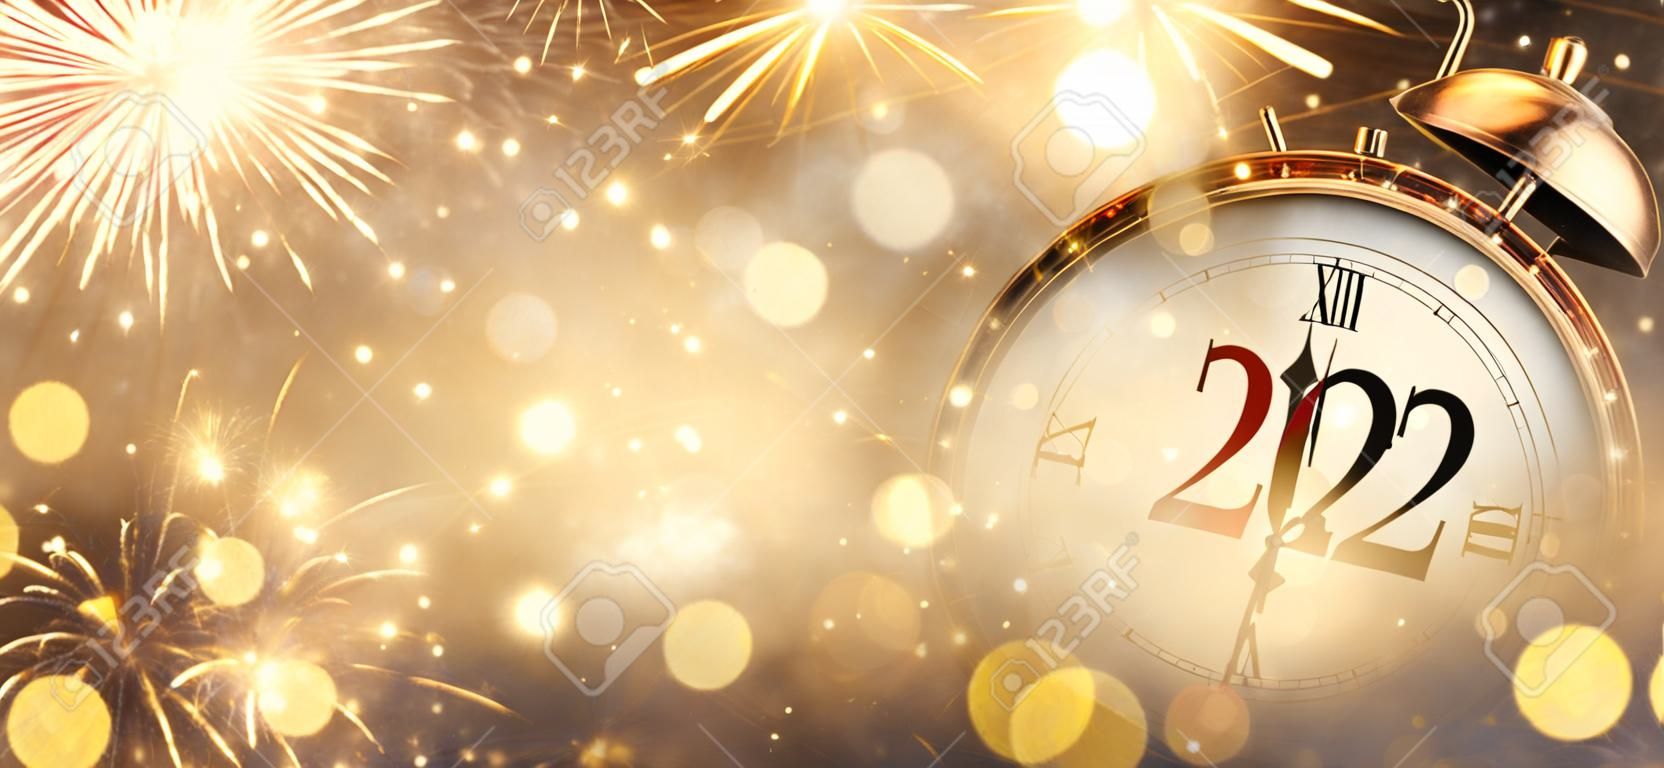 2022 Ano Novo - Relógio e Fogos de Artifício - Contagem regressiva para a meia-noite - Fundo desfocado abstrato dourado